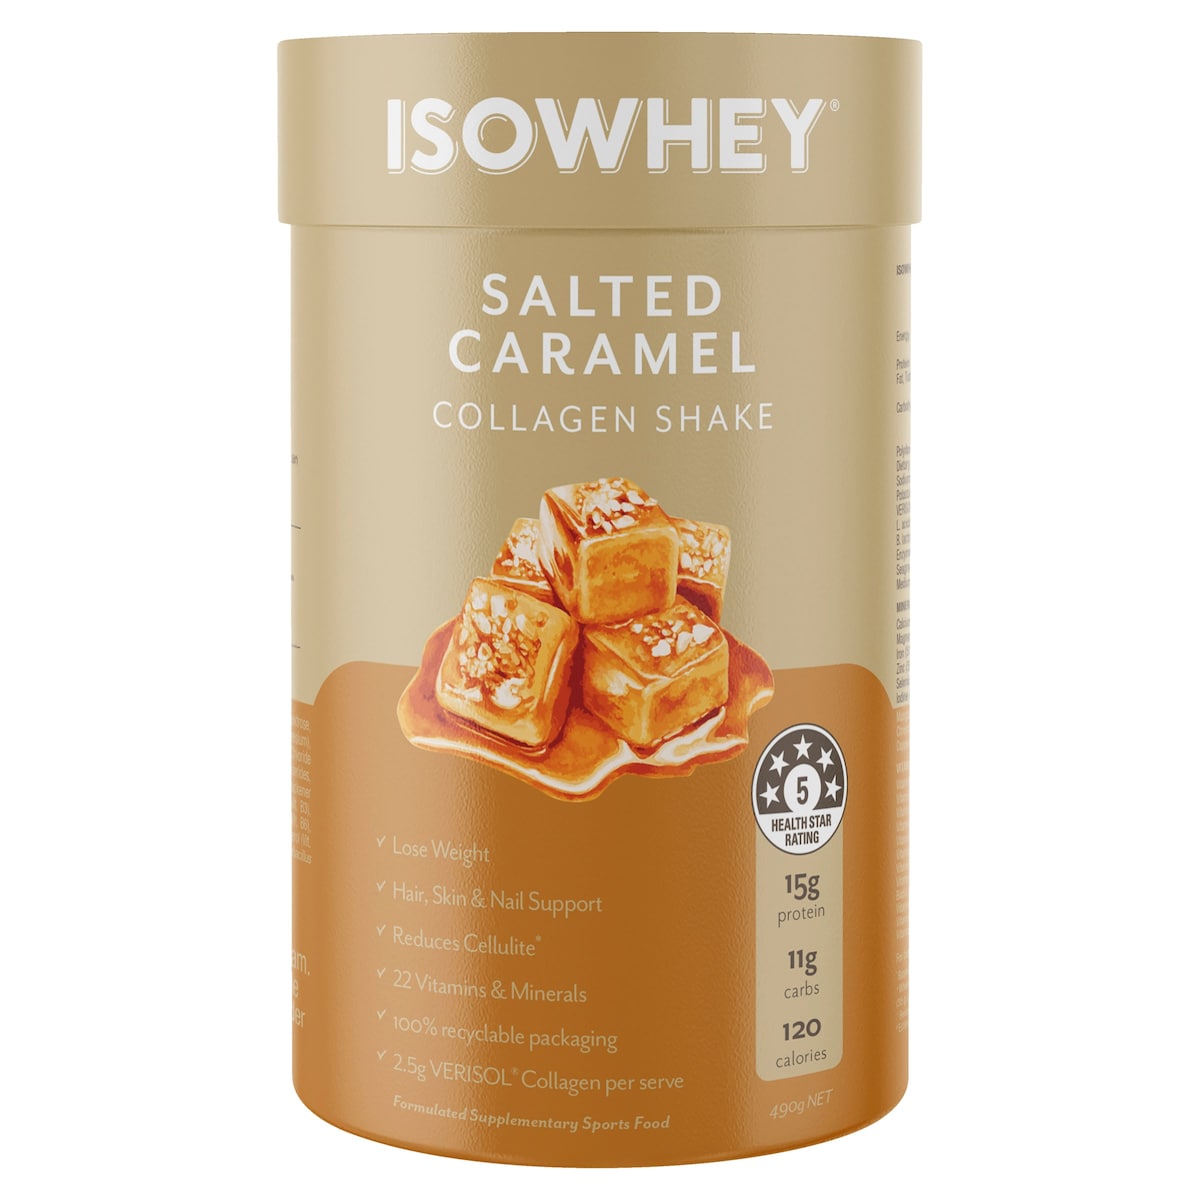 Isowhey Salted Caramel Collagen Shake 490g Australia